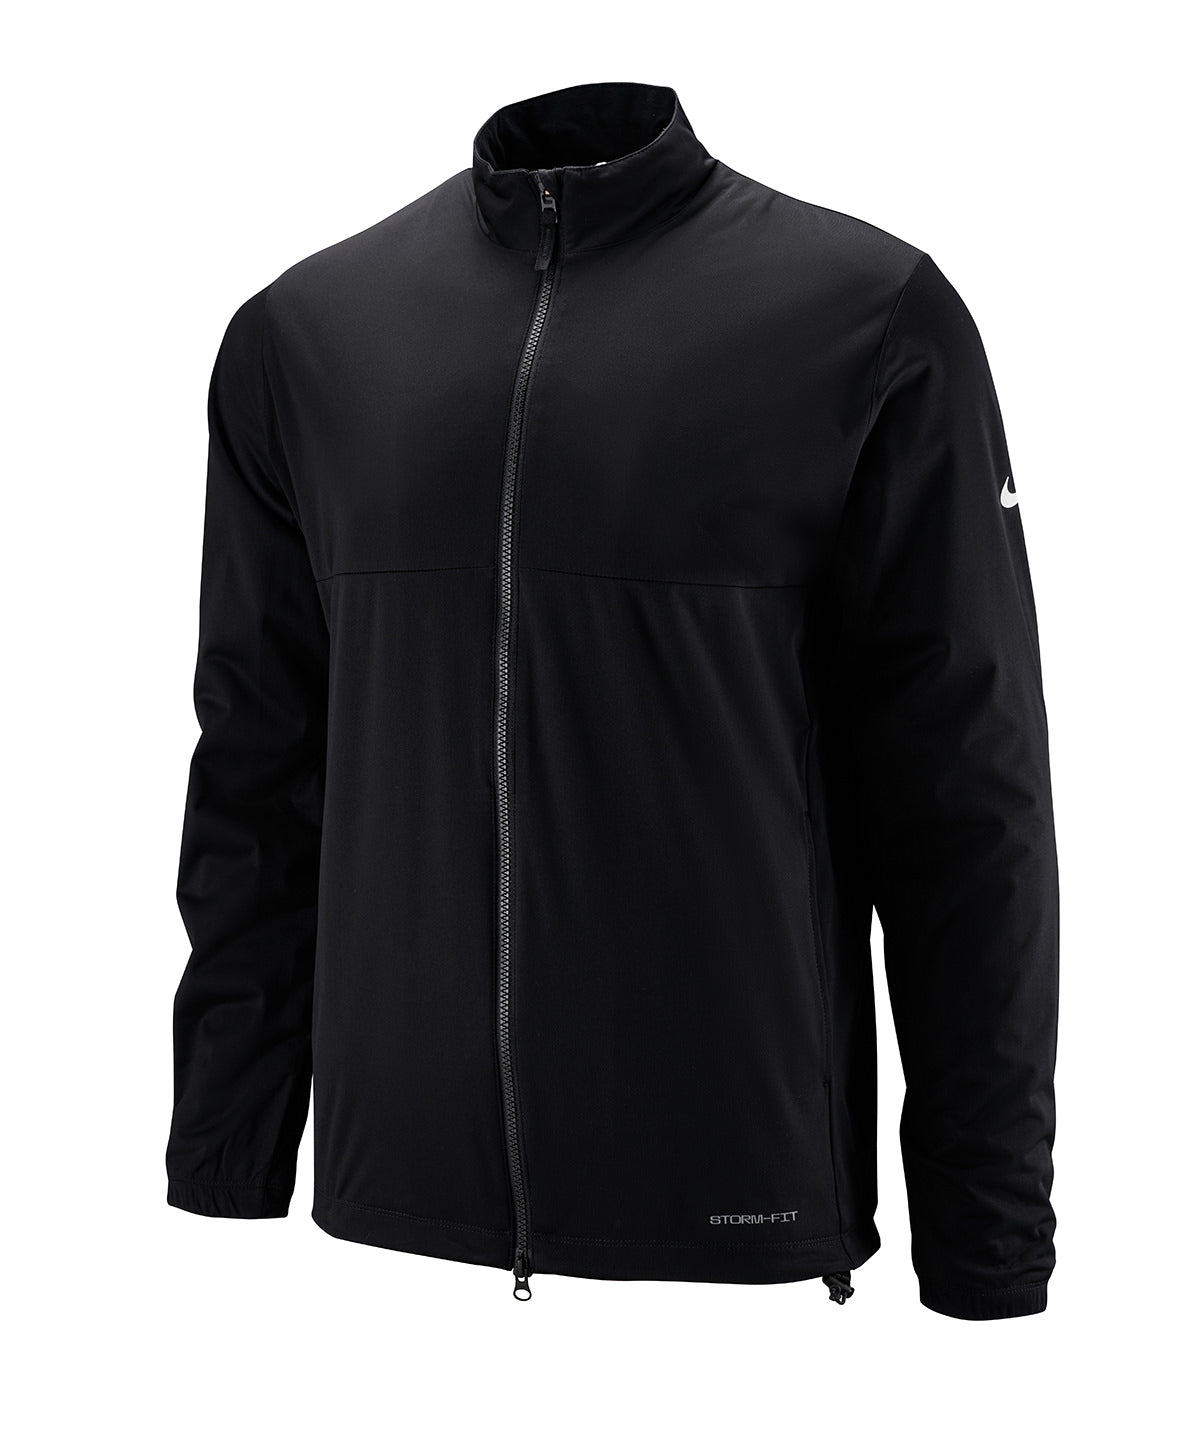 Personalised Jackets - Black Nike Nike Victory full-zip jacket